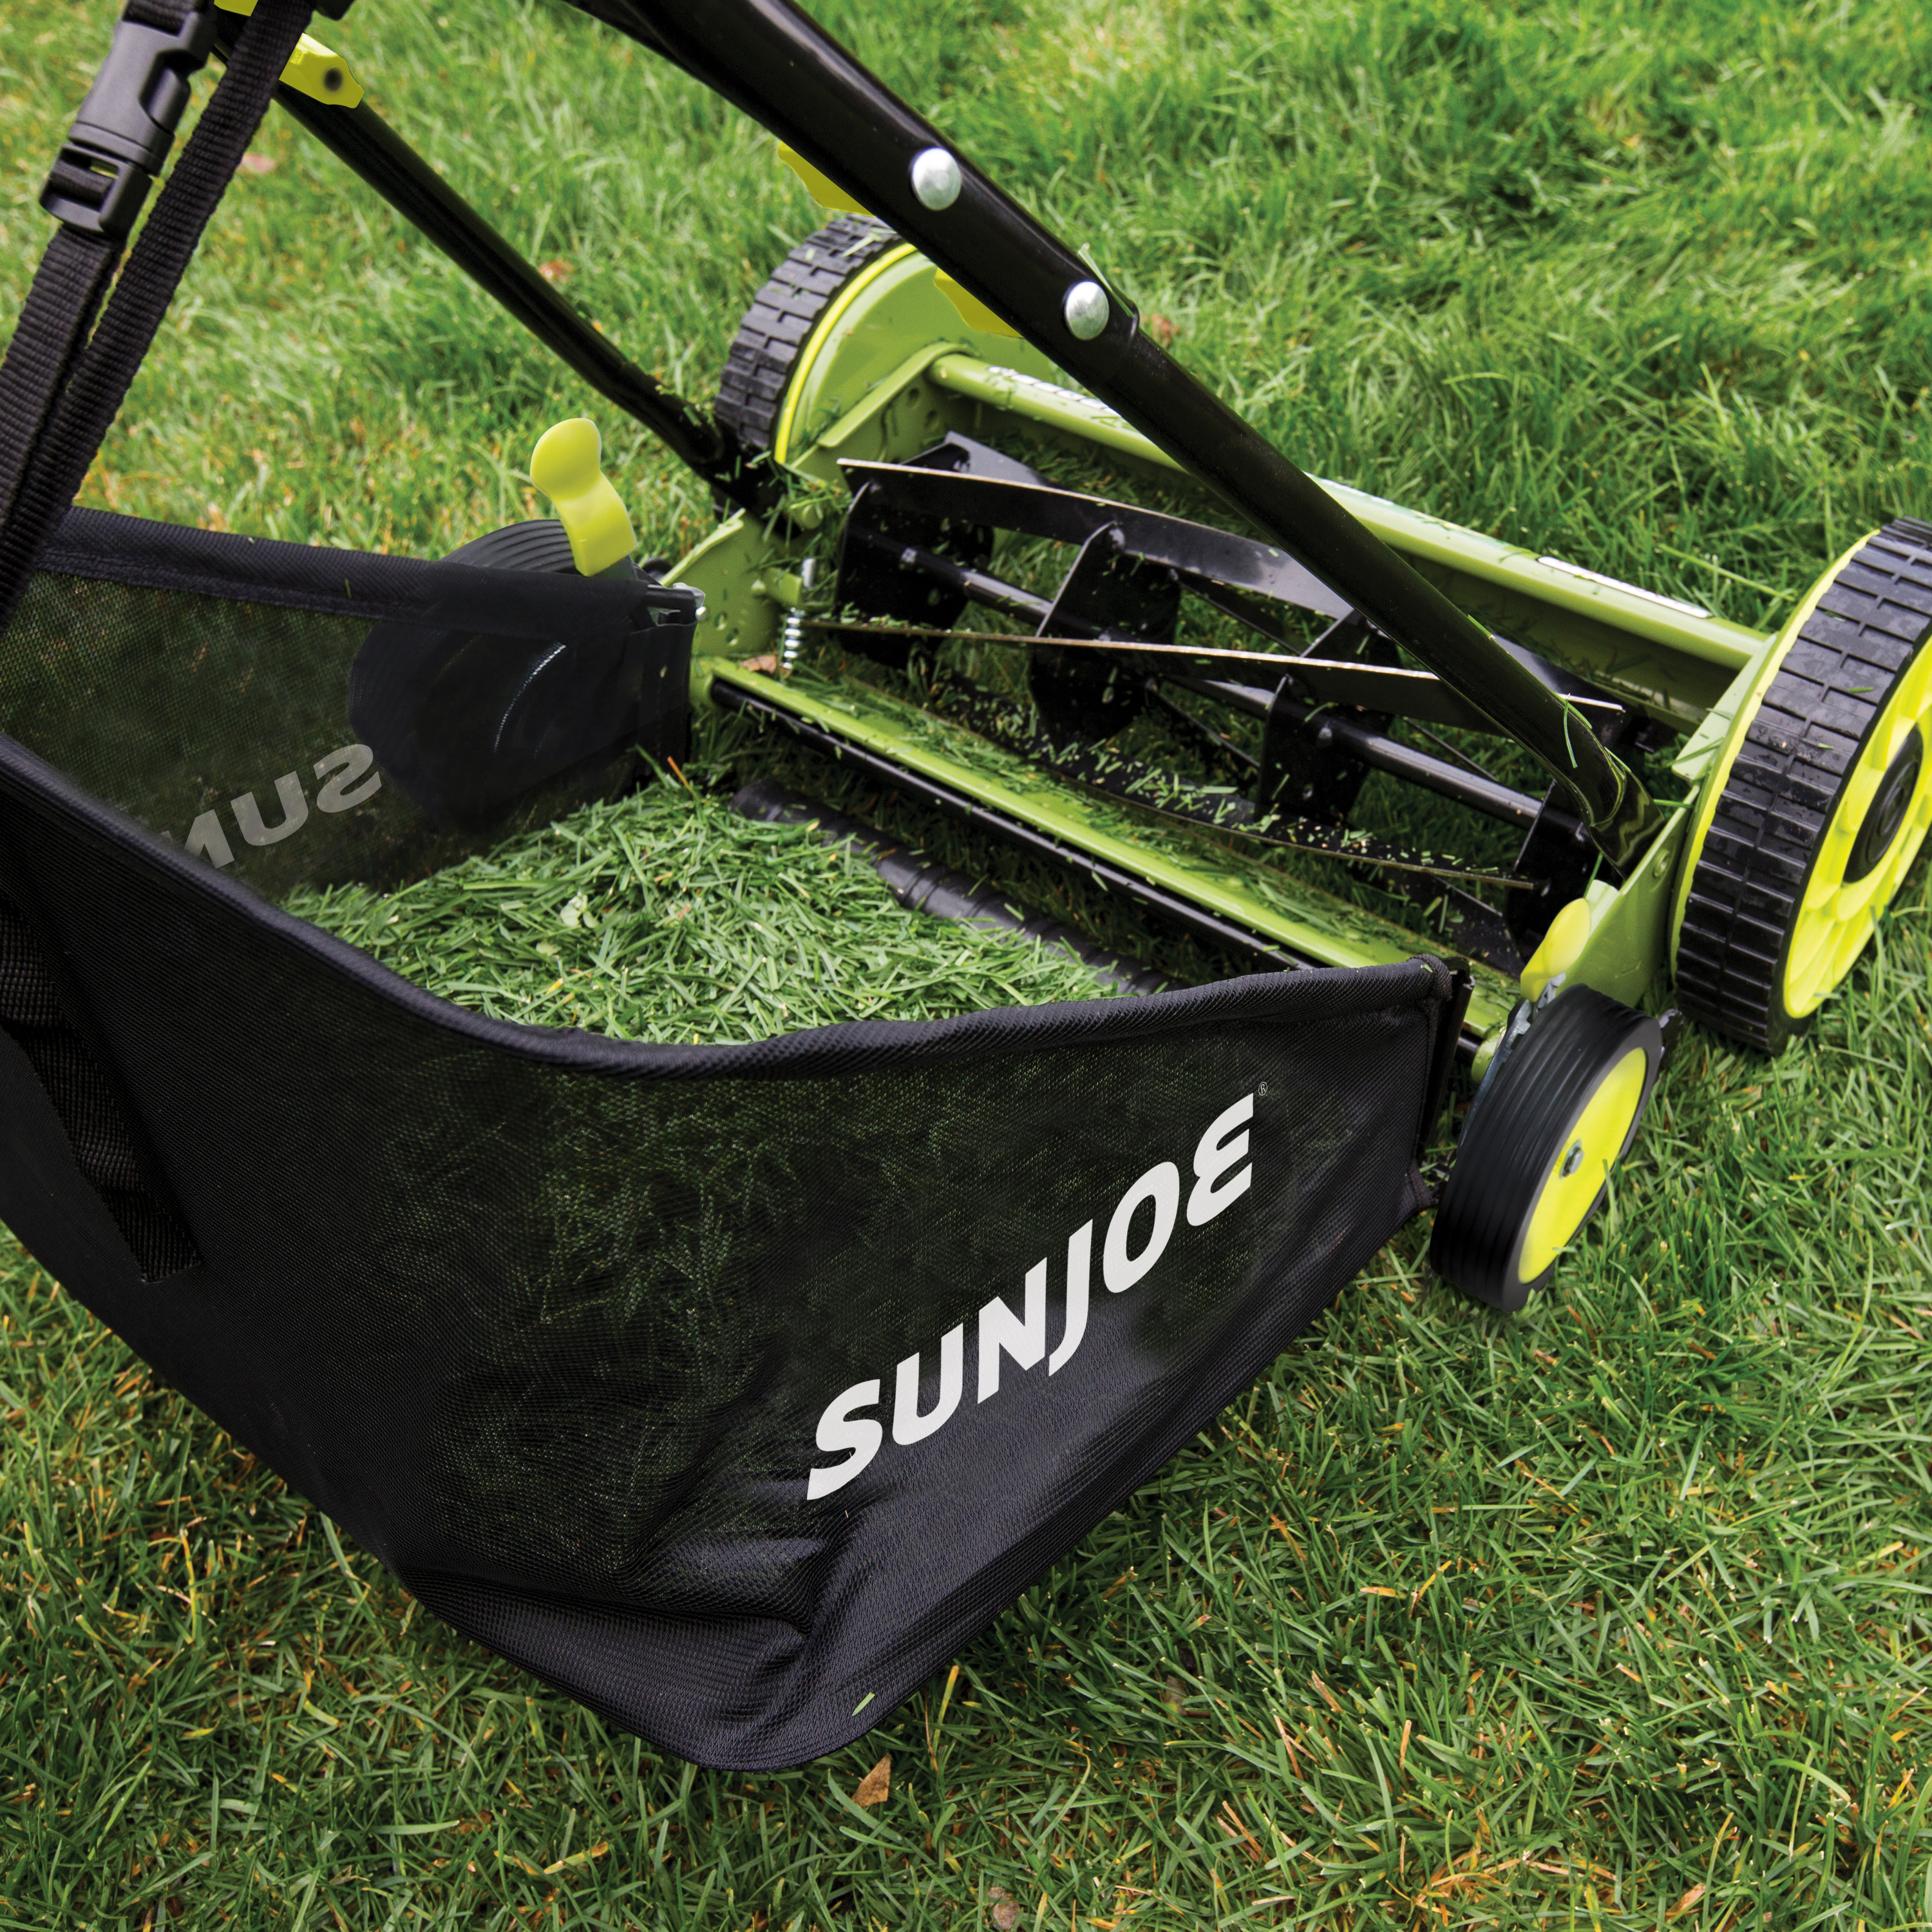 Sun Joe 20 Manual Reel Mower with Grass Catcher